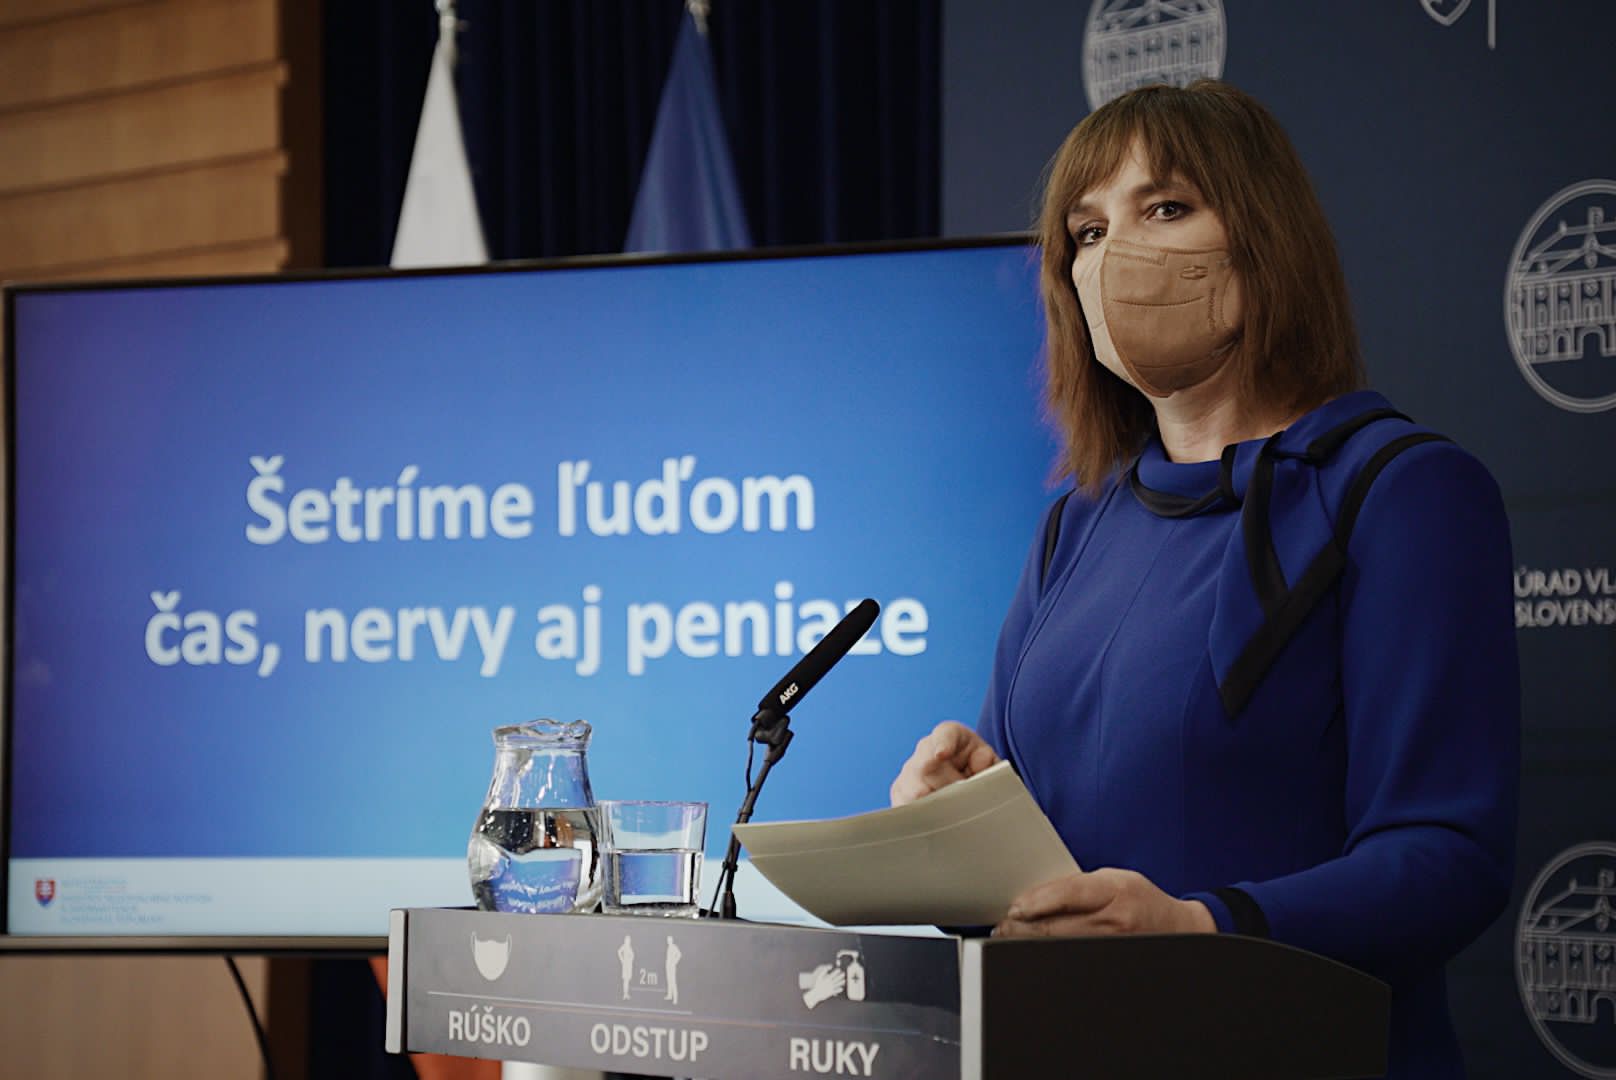 Vicepremiérka Remišová: Po prvých týždňoch platnosti zákona je jasné, že najväčšia antibyrokratická reforma v histórii Slovenska je veľkým úspechom